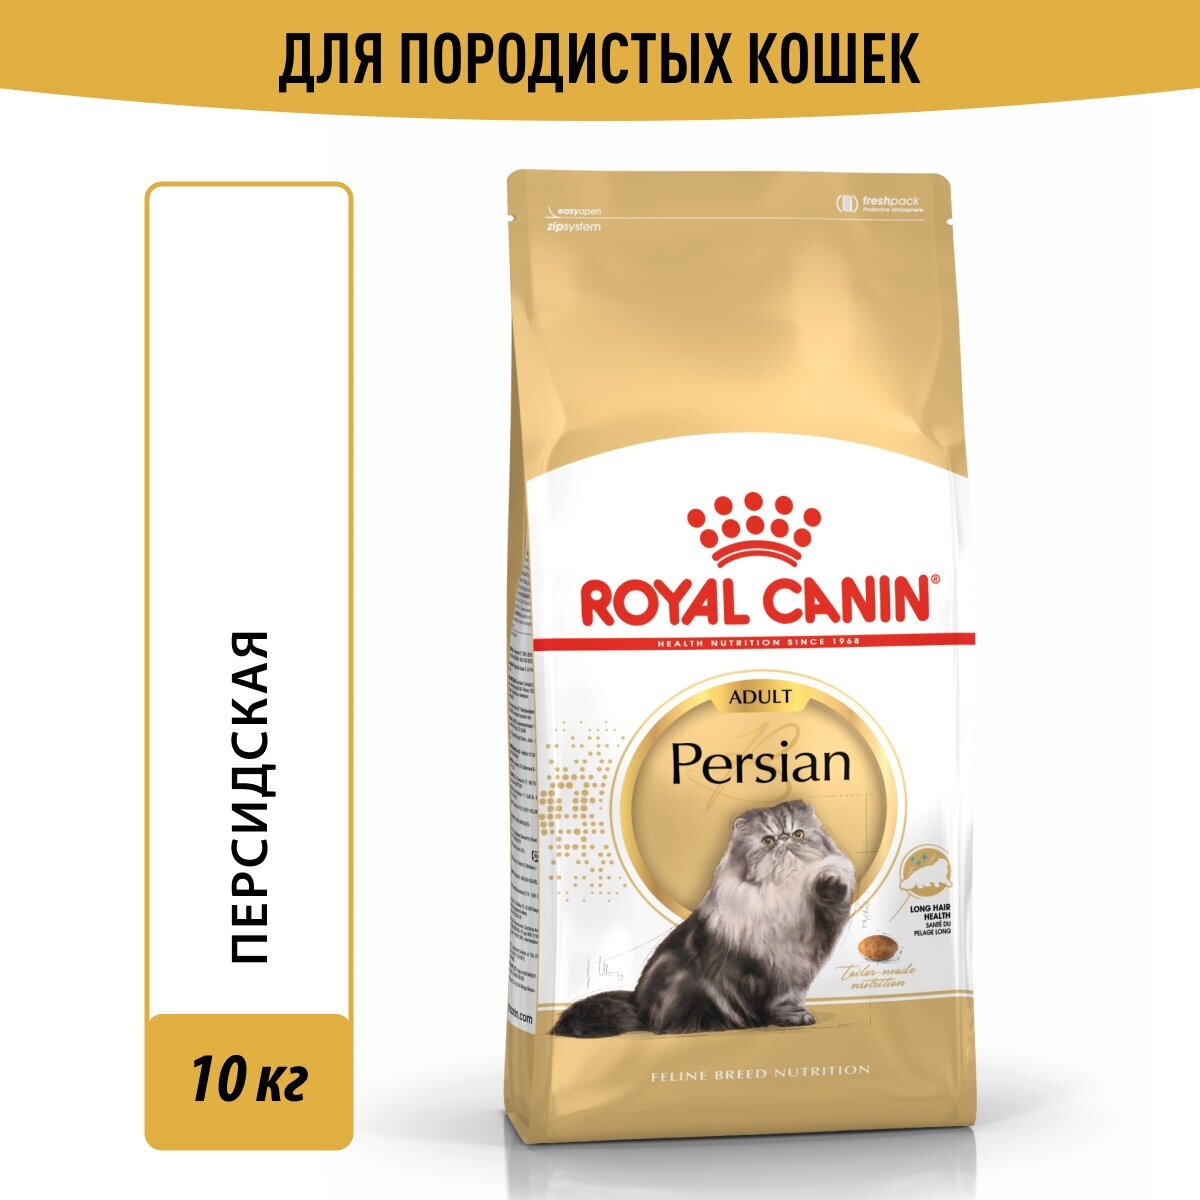 Корм для кошек Royal Canin Persian Adult (Персиан Эдалт) Корм сухой сбалансированный для взрослых персидских кошек, 10кг